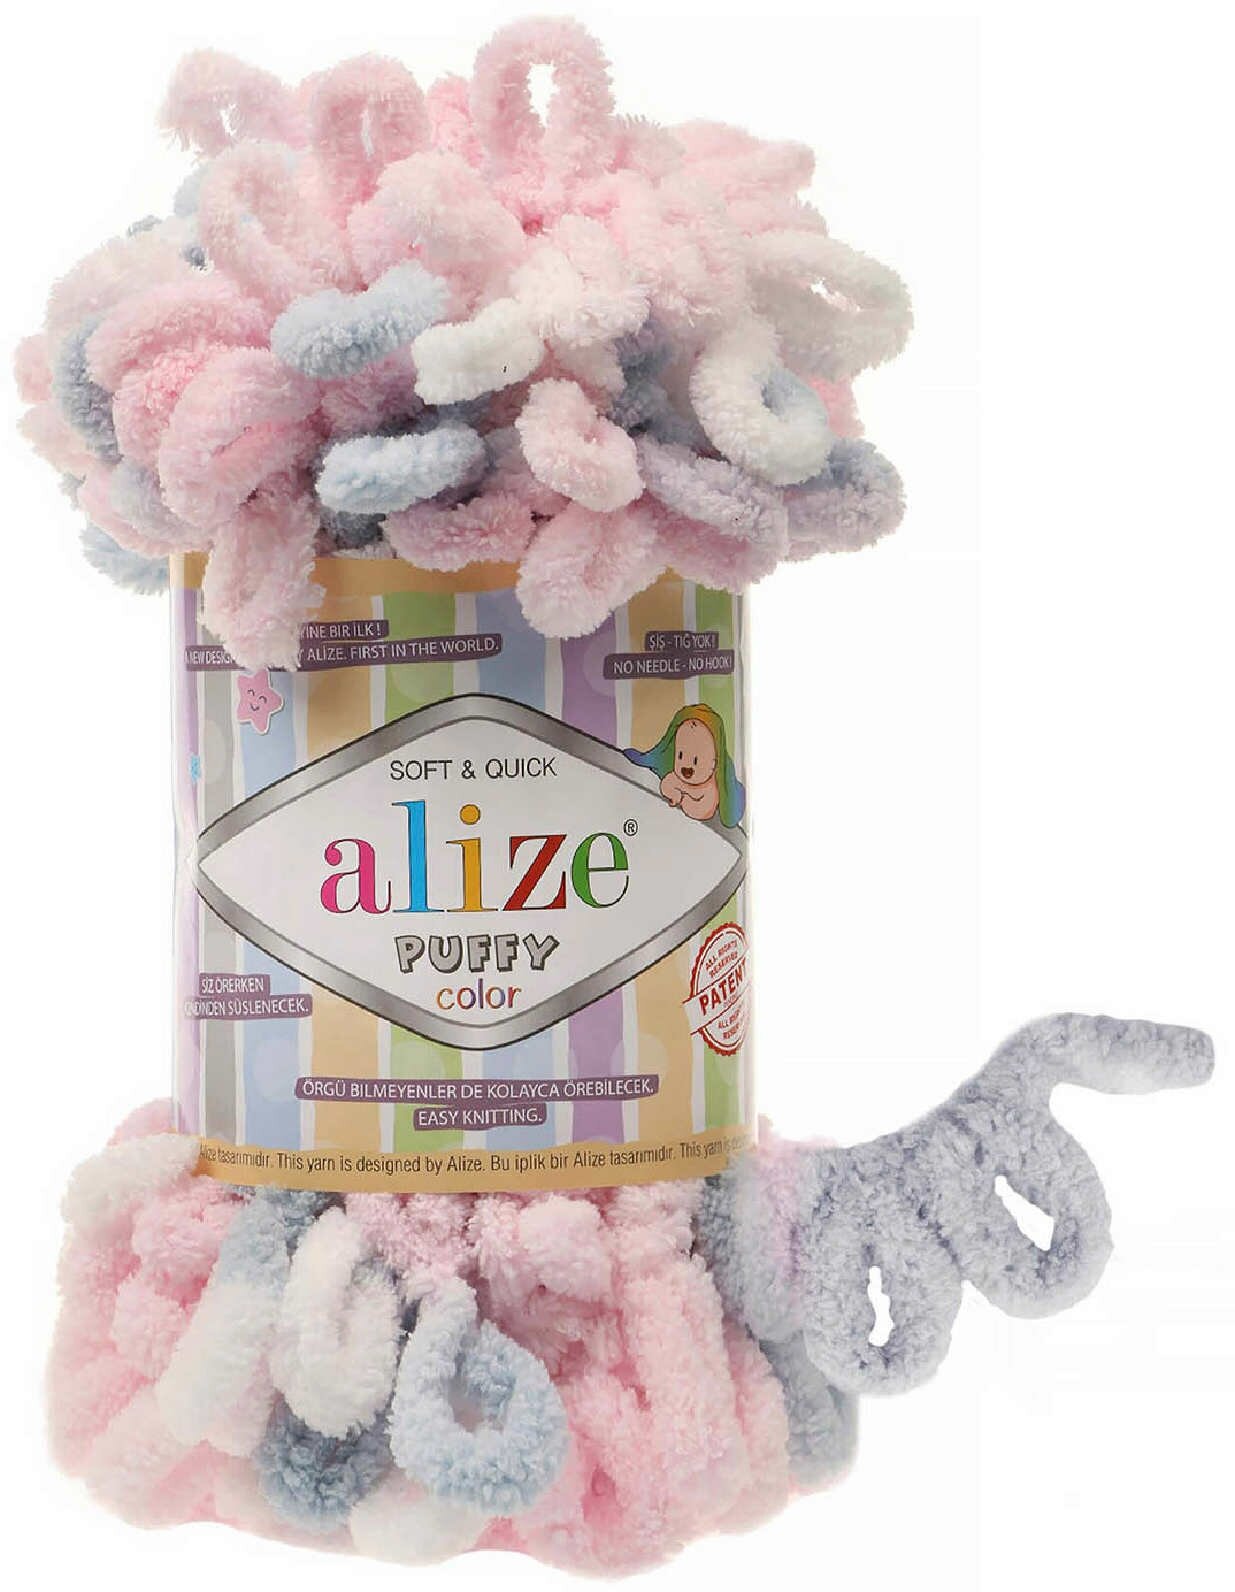 Пряжа Alize Puffy color розовый-белый-голубой (5864), 100%микрополиэстер, 9м, 100г, 1шт